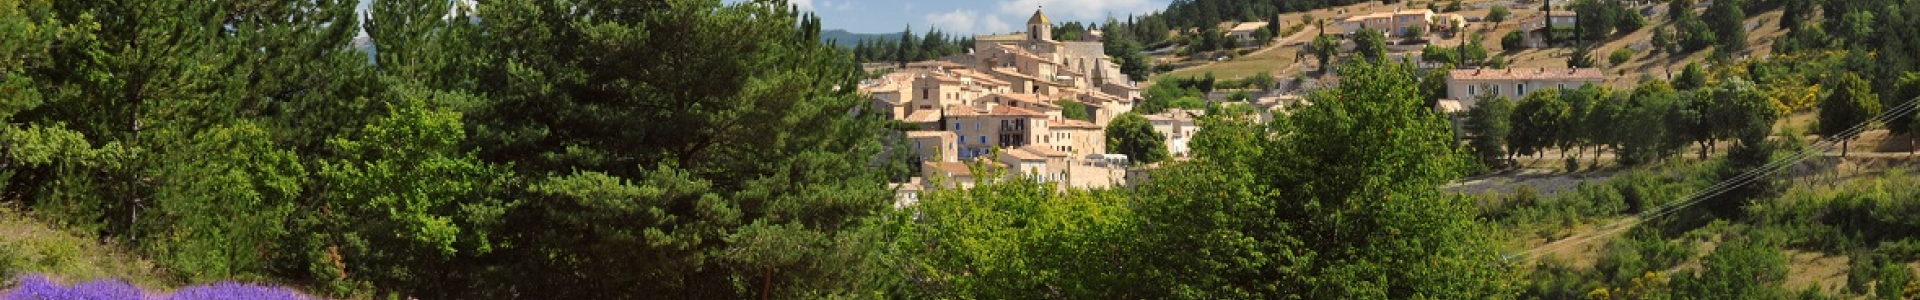 Vaucluse Tourisme : sélection de chambres d'hôtes à - de 60 €/nuit